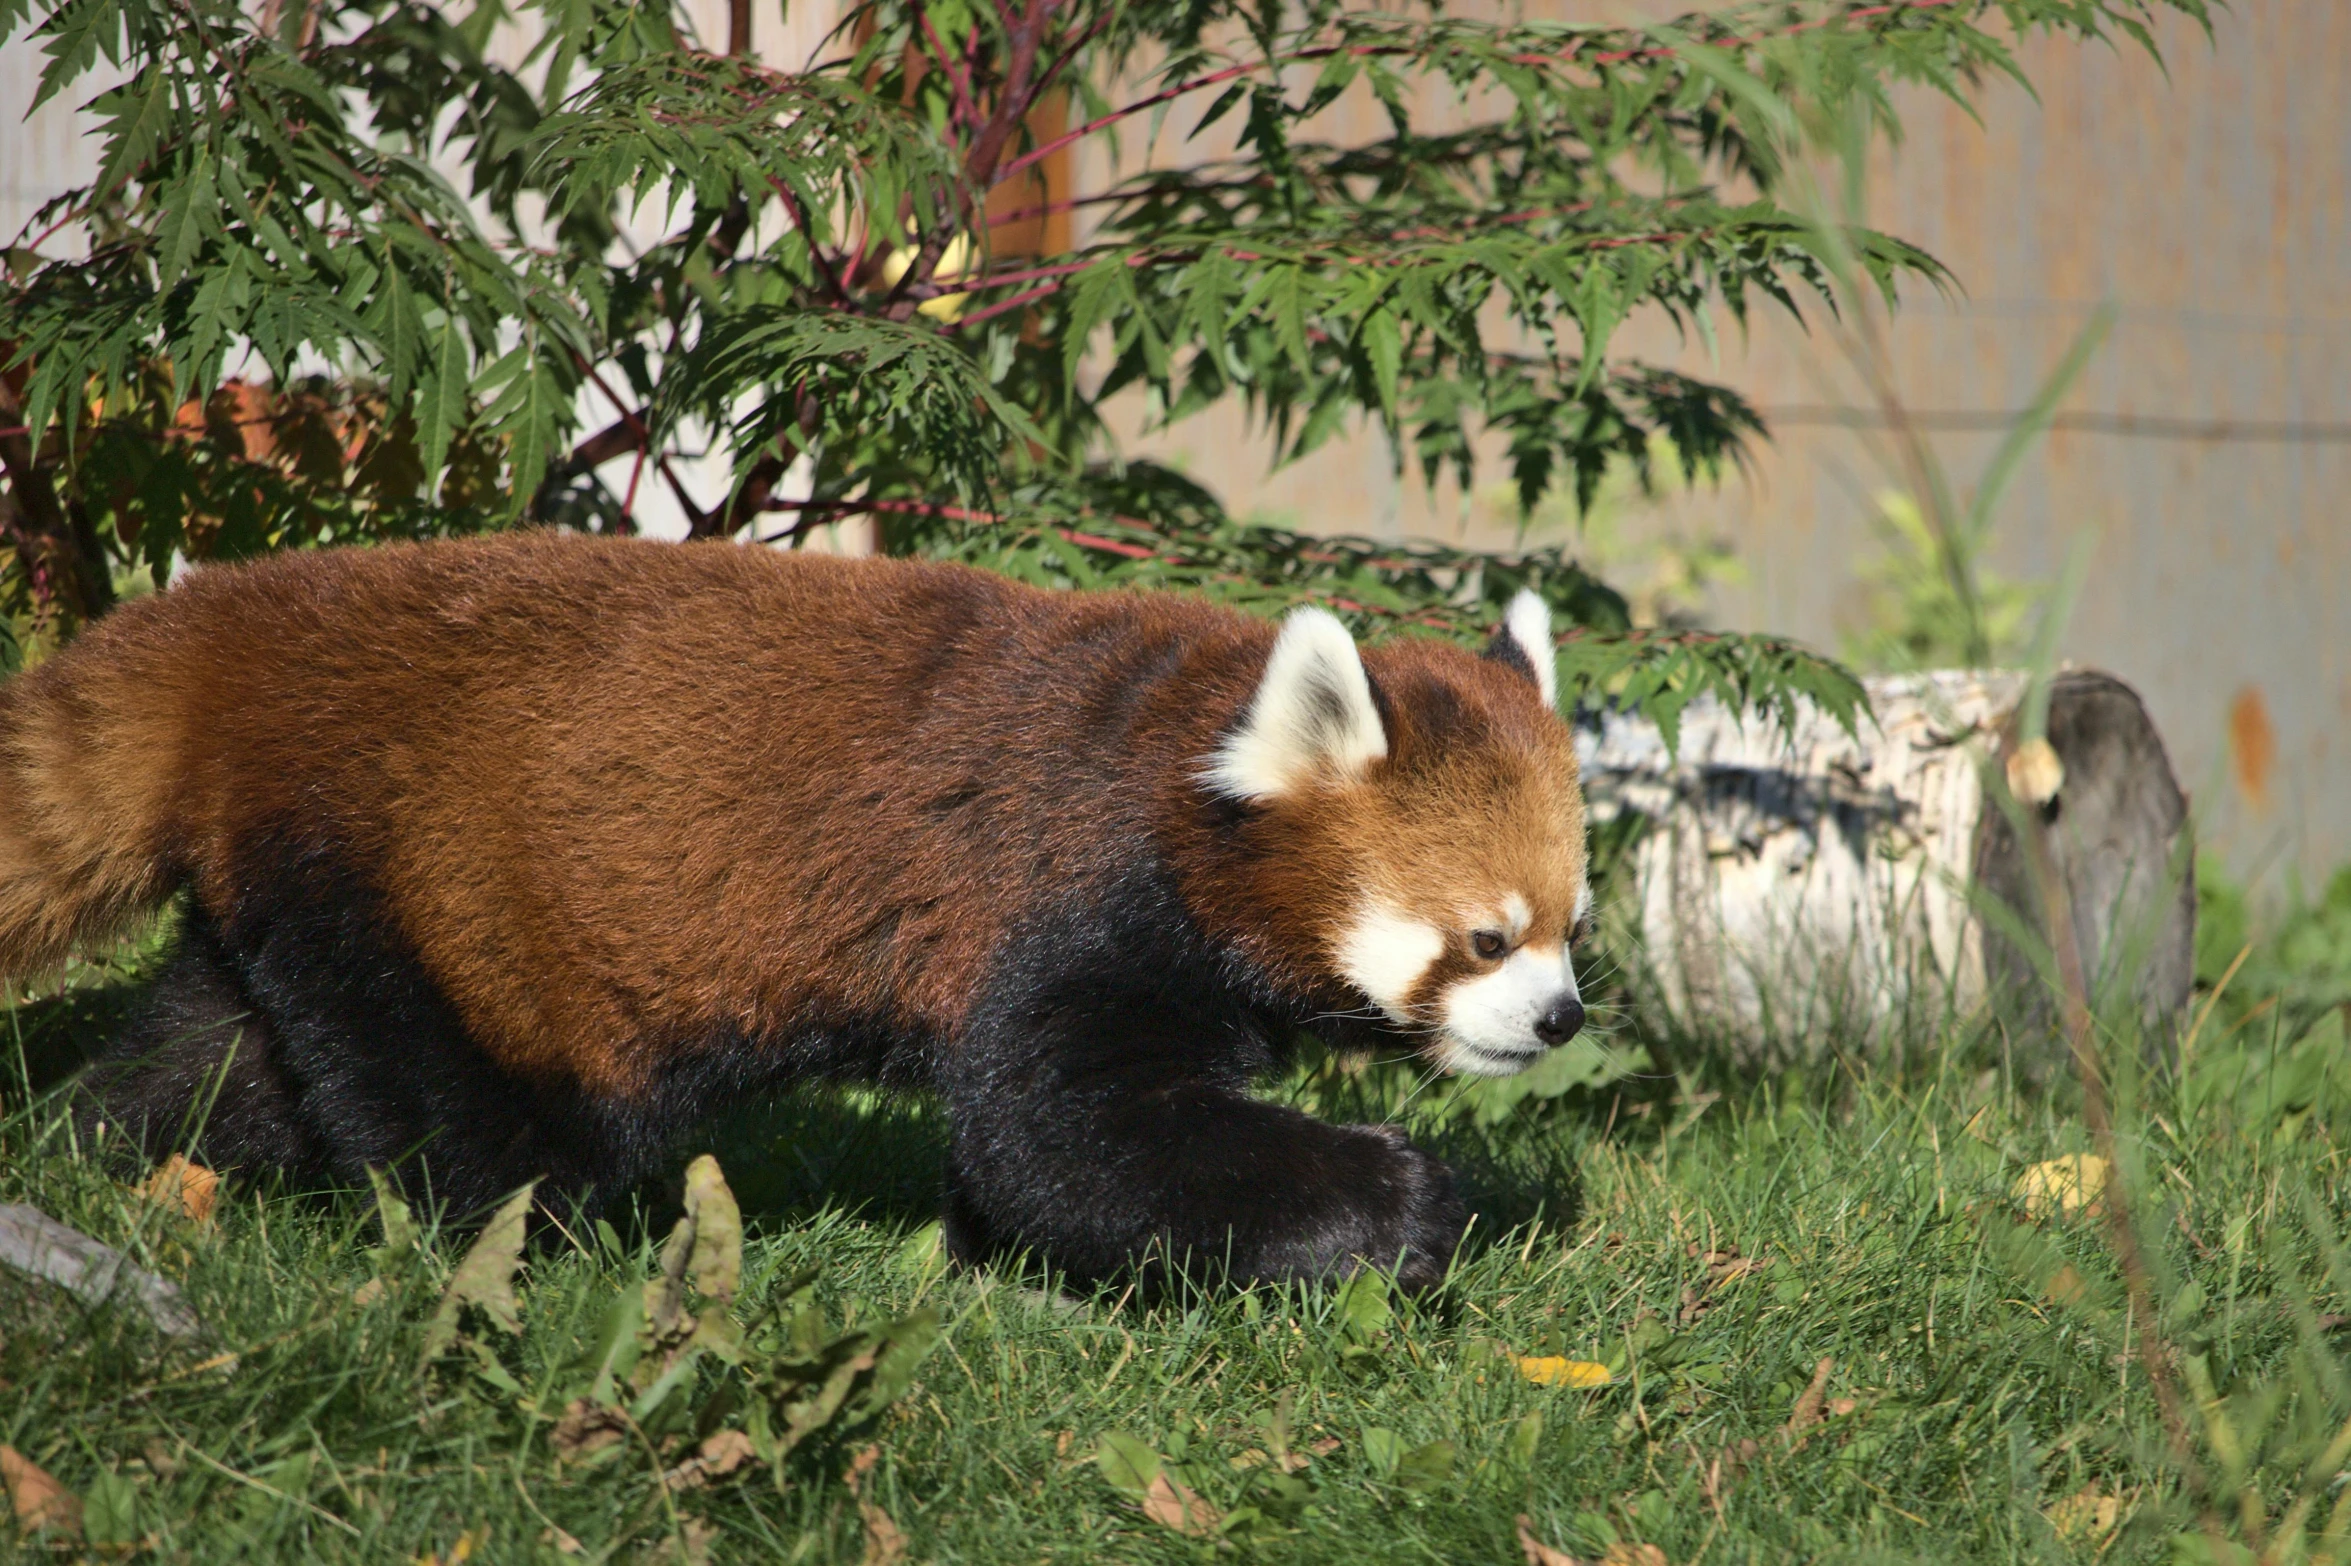 red panda walking around in some grass